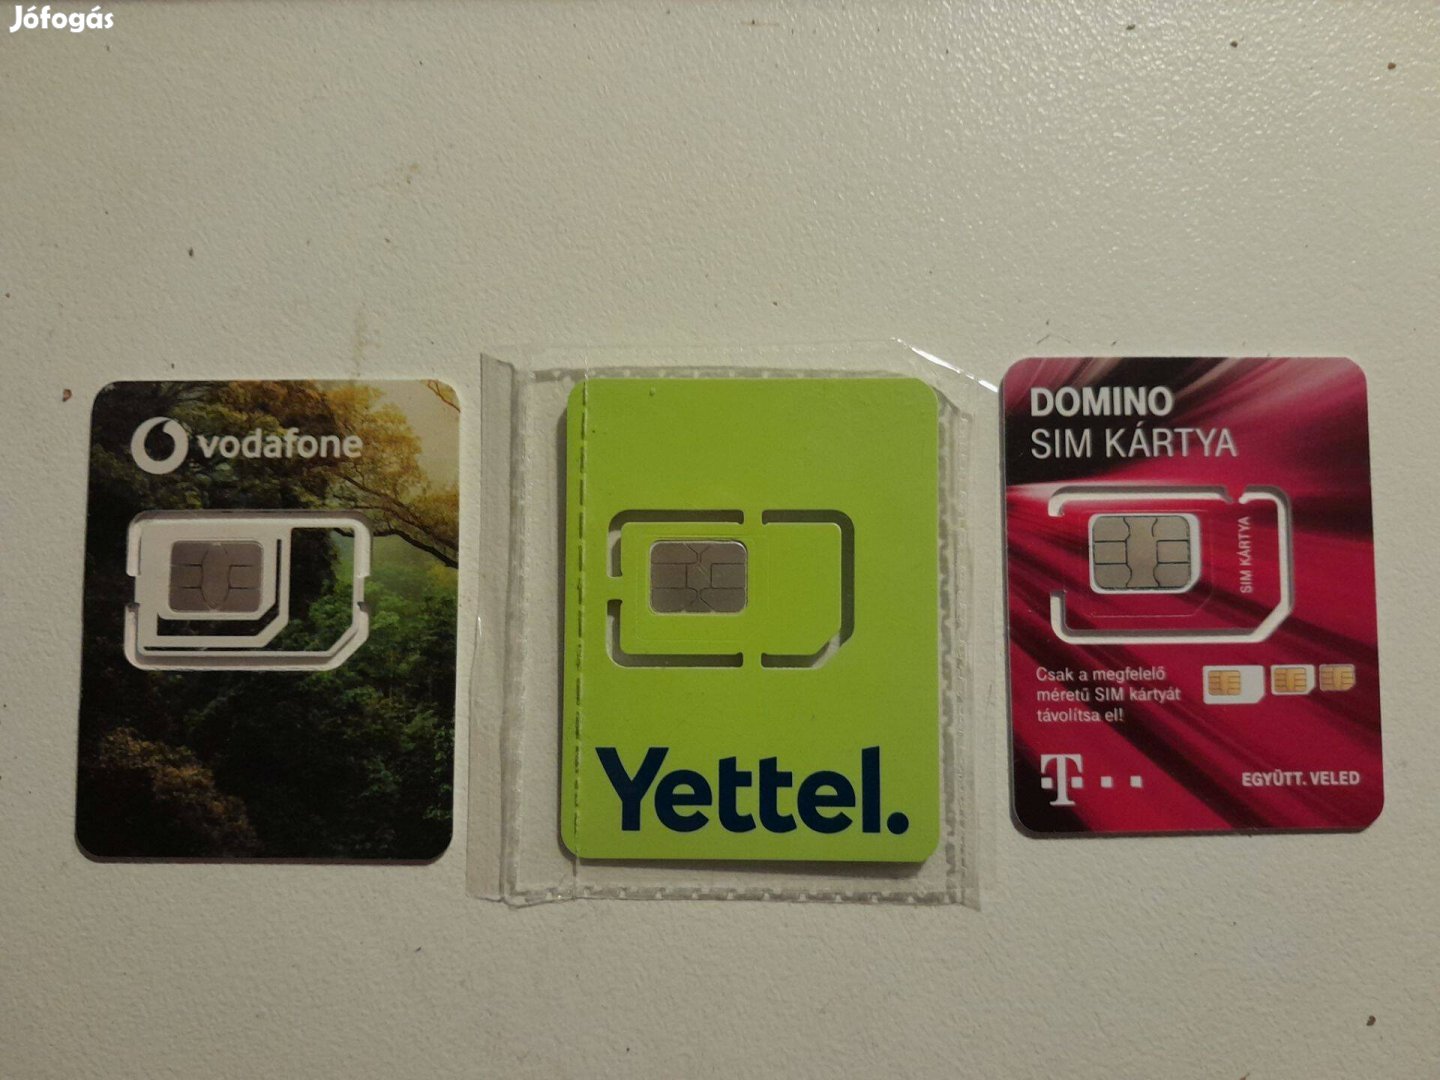 SIM kártya, aktivált (regisztrált, aktív), Vodafone, Yettel, Telekom